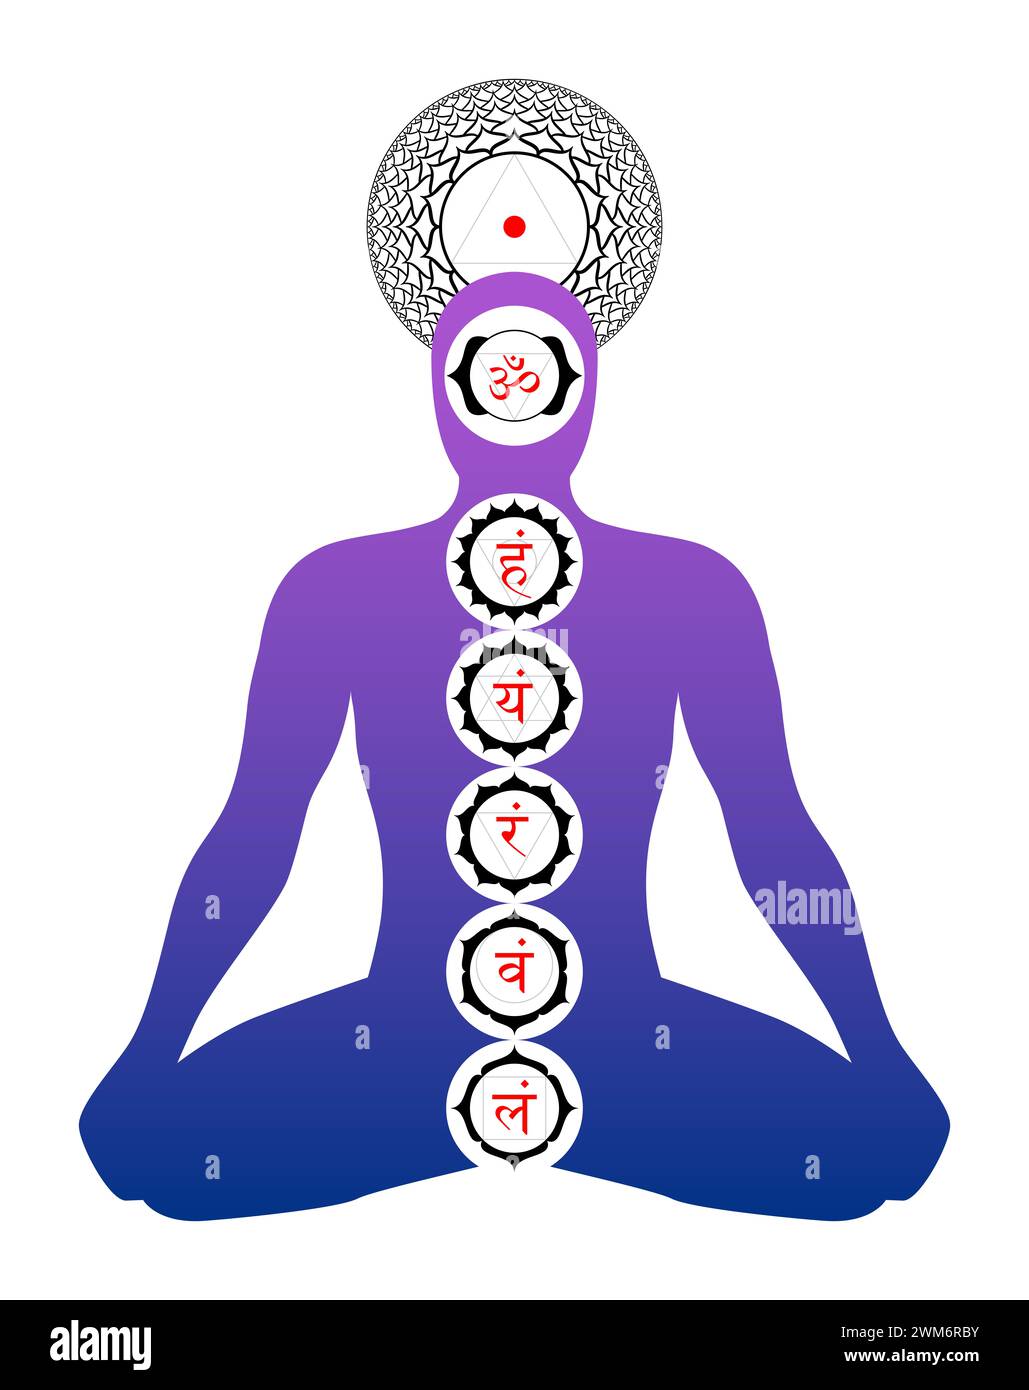 Position des chakras principaux dans le corps. Silhouette d'un corps en position yoga, avec des symboles de sept chakras principaux, représentés avec des pétales de fleur de lotus Banque D'Images